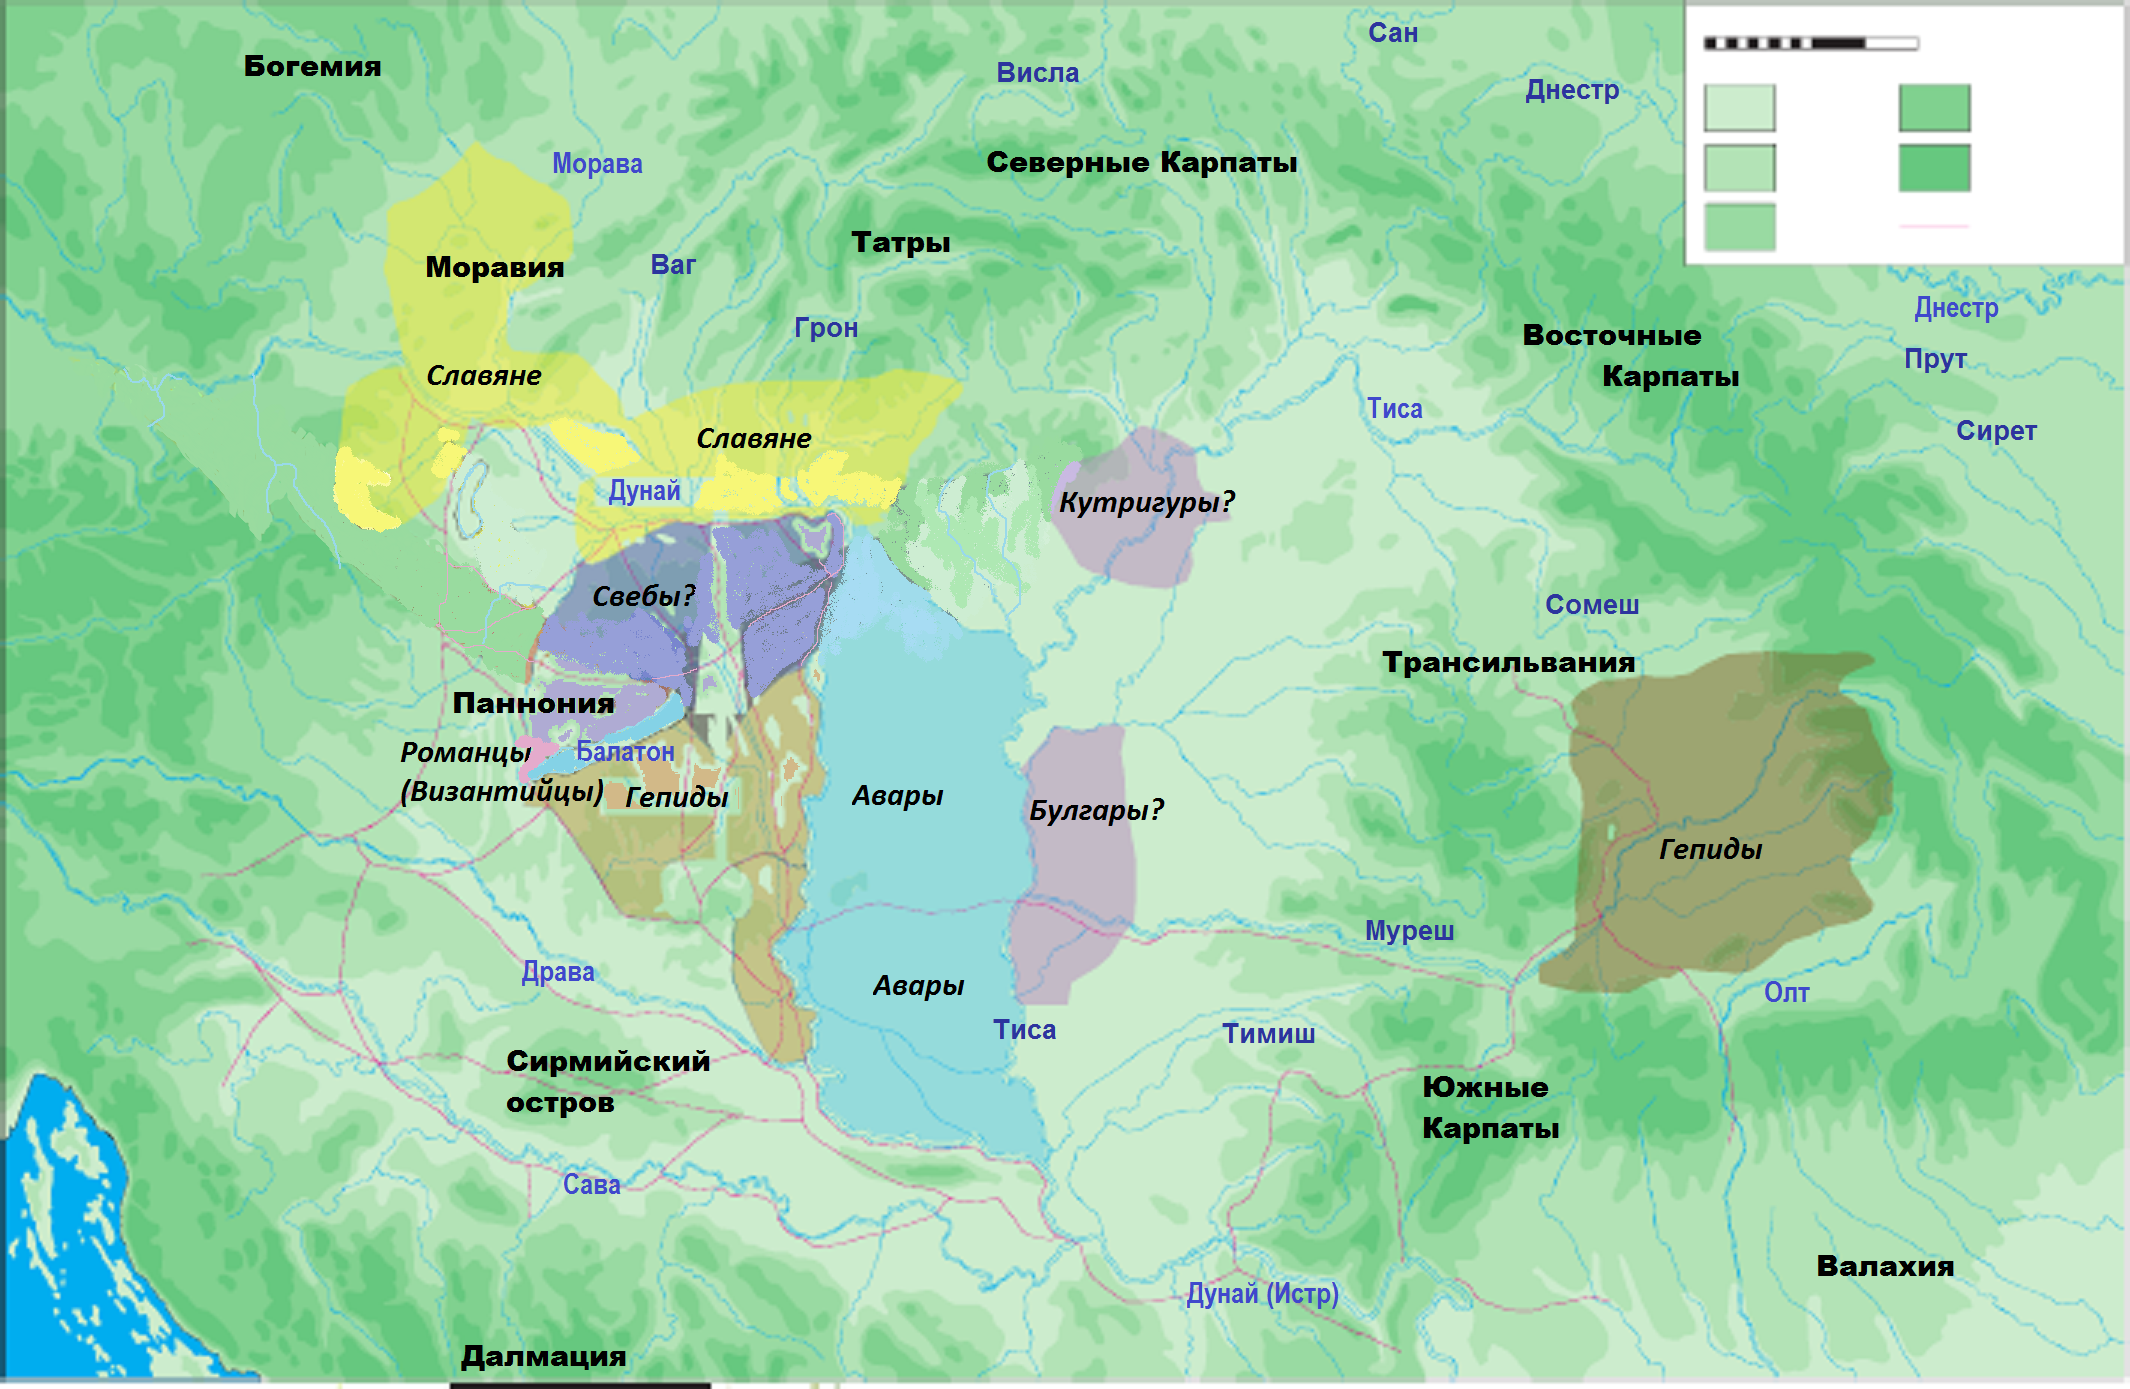 Распределение этнических элементов внутри Аварского каганата по П. Штадлеру